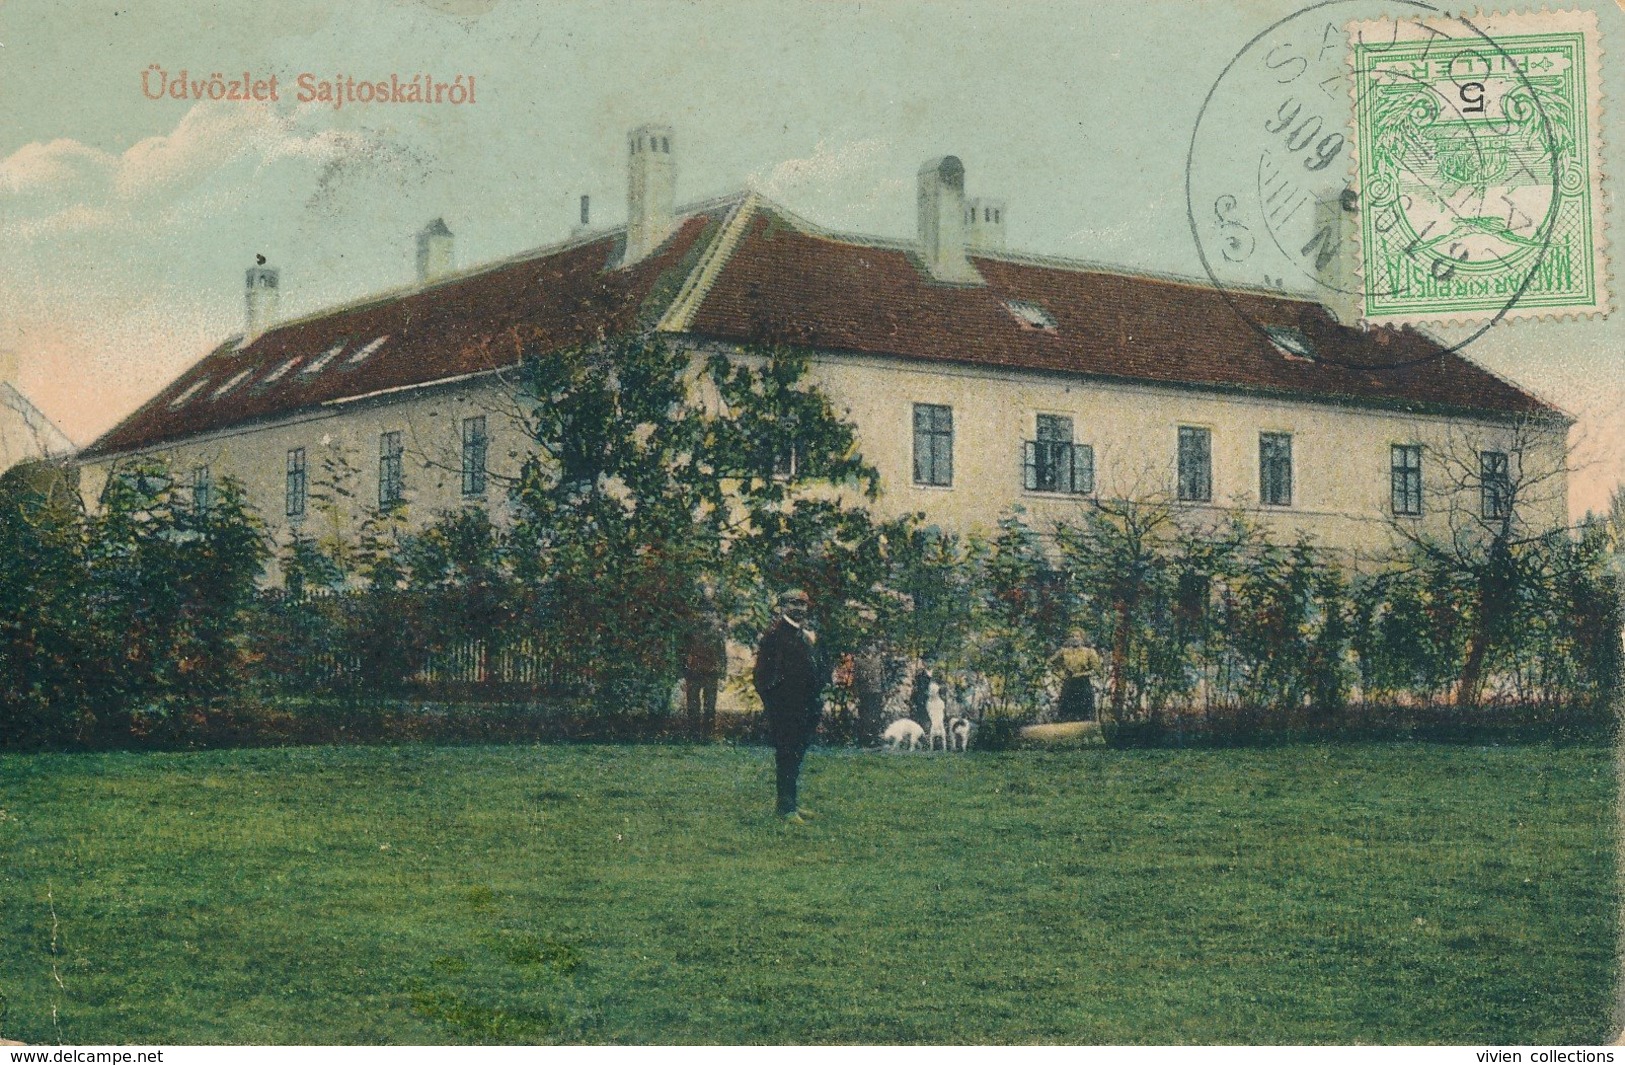 Udvözlet (Hongrie) Sajtos Kalrol - Circulée 1909 De Sautoskal - Hungary